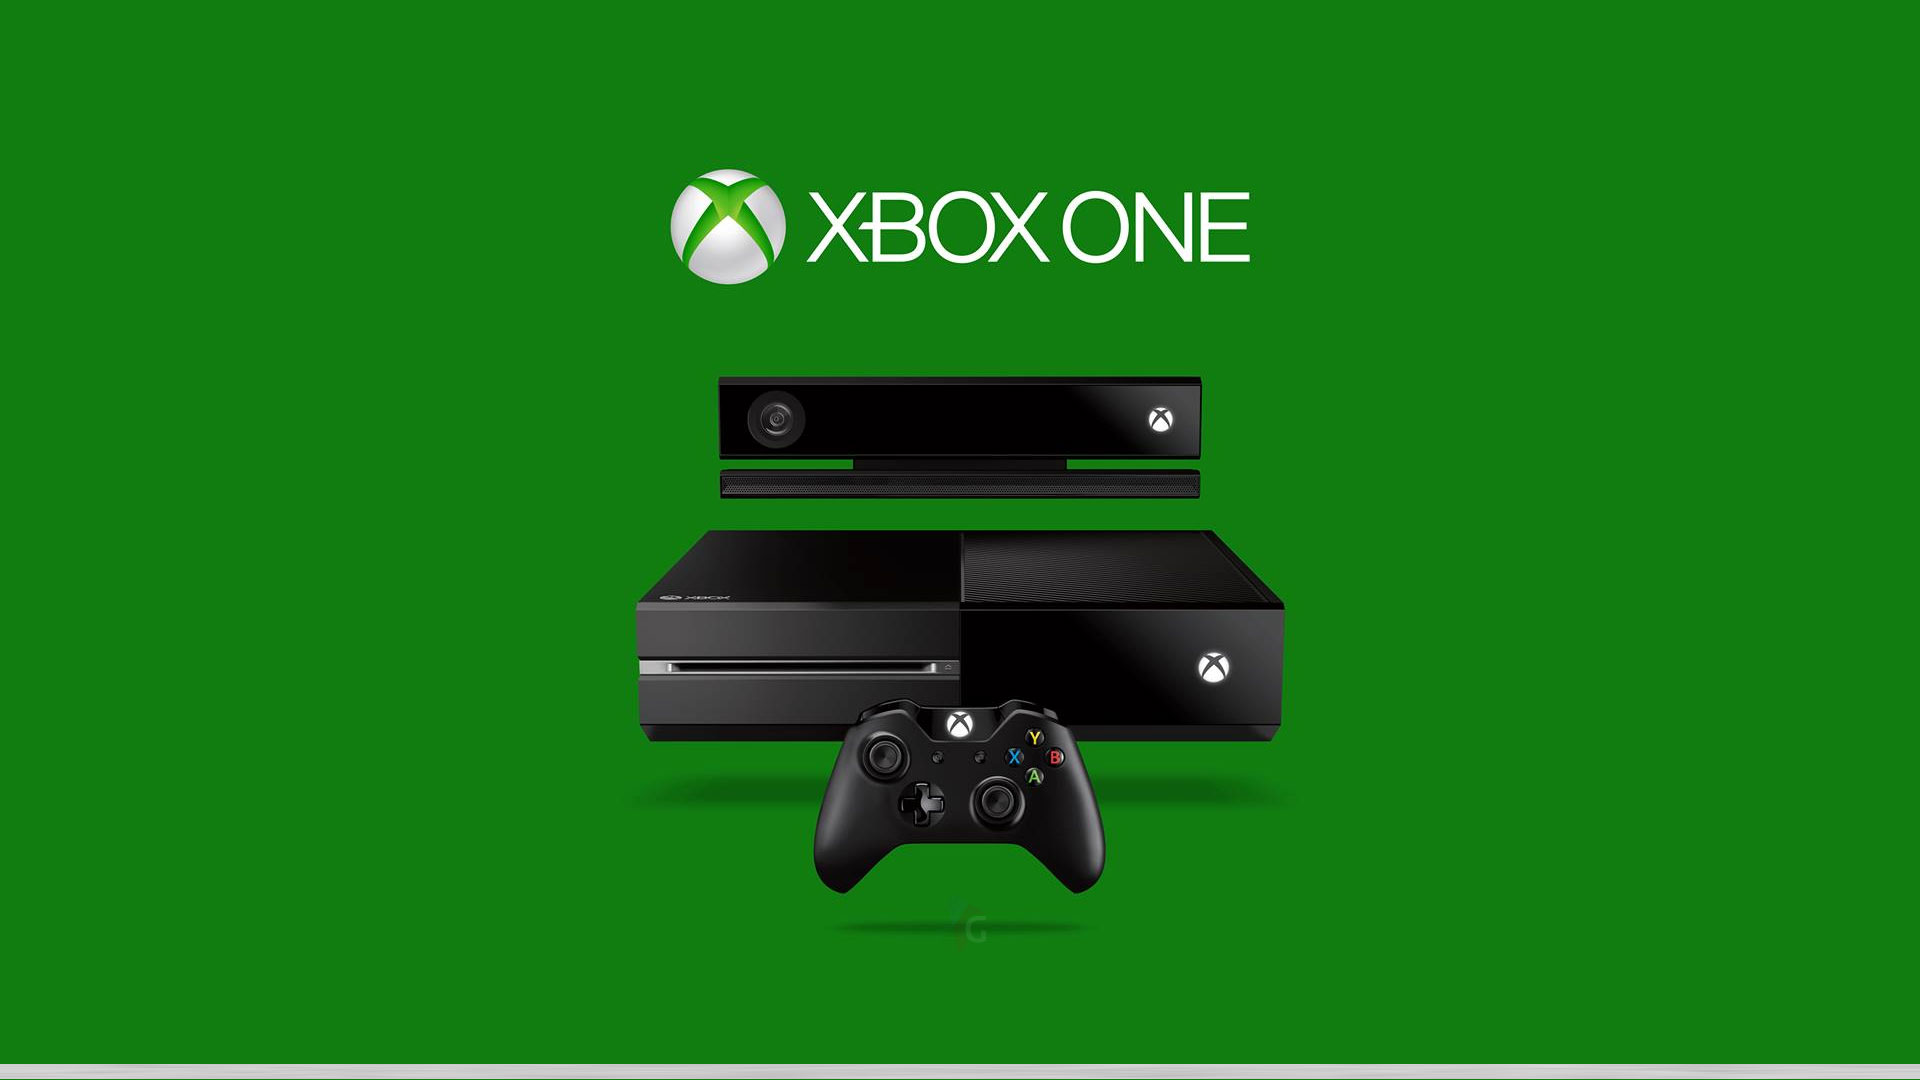 Xbox One 1080p Wallpaper Xbox One 720p Wallpaper